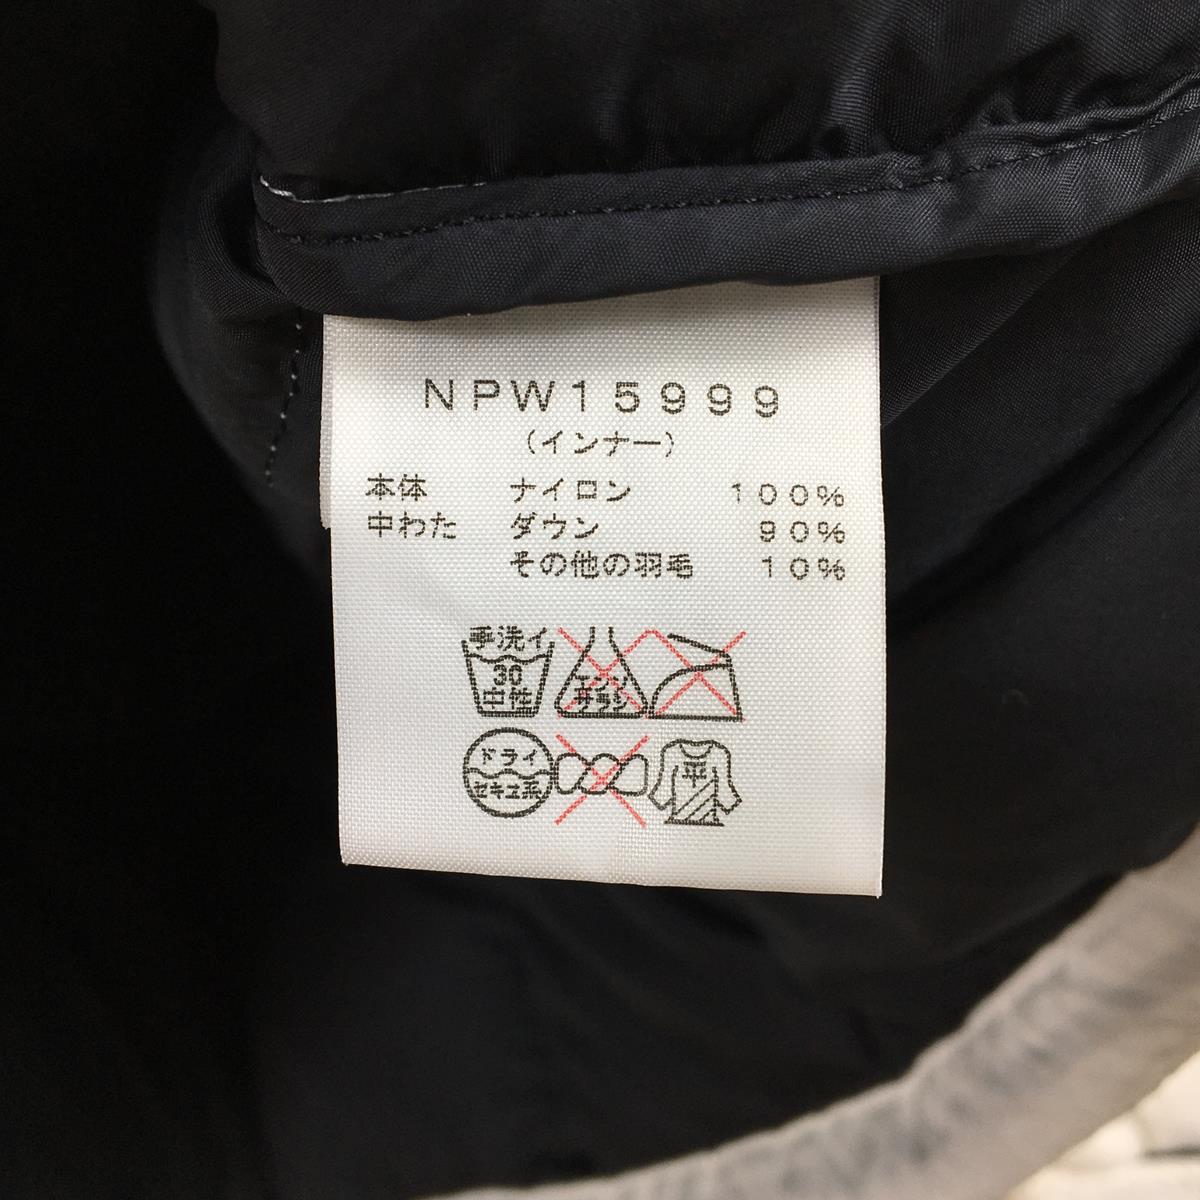 【WOMEN's L】 ノースフェイス スクープ トリクライメート ジャケット Scoop Triclimate Jacket インナーのみ ダウンジャケット NORTH FACE NPW15999 ホワイト系